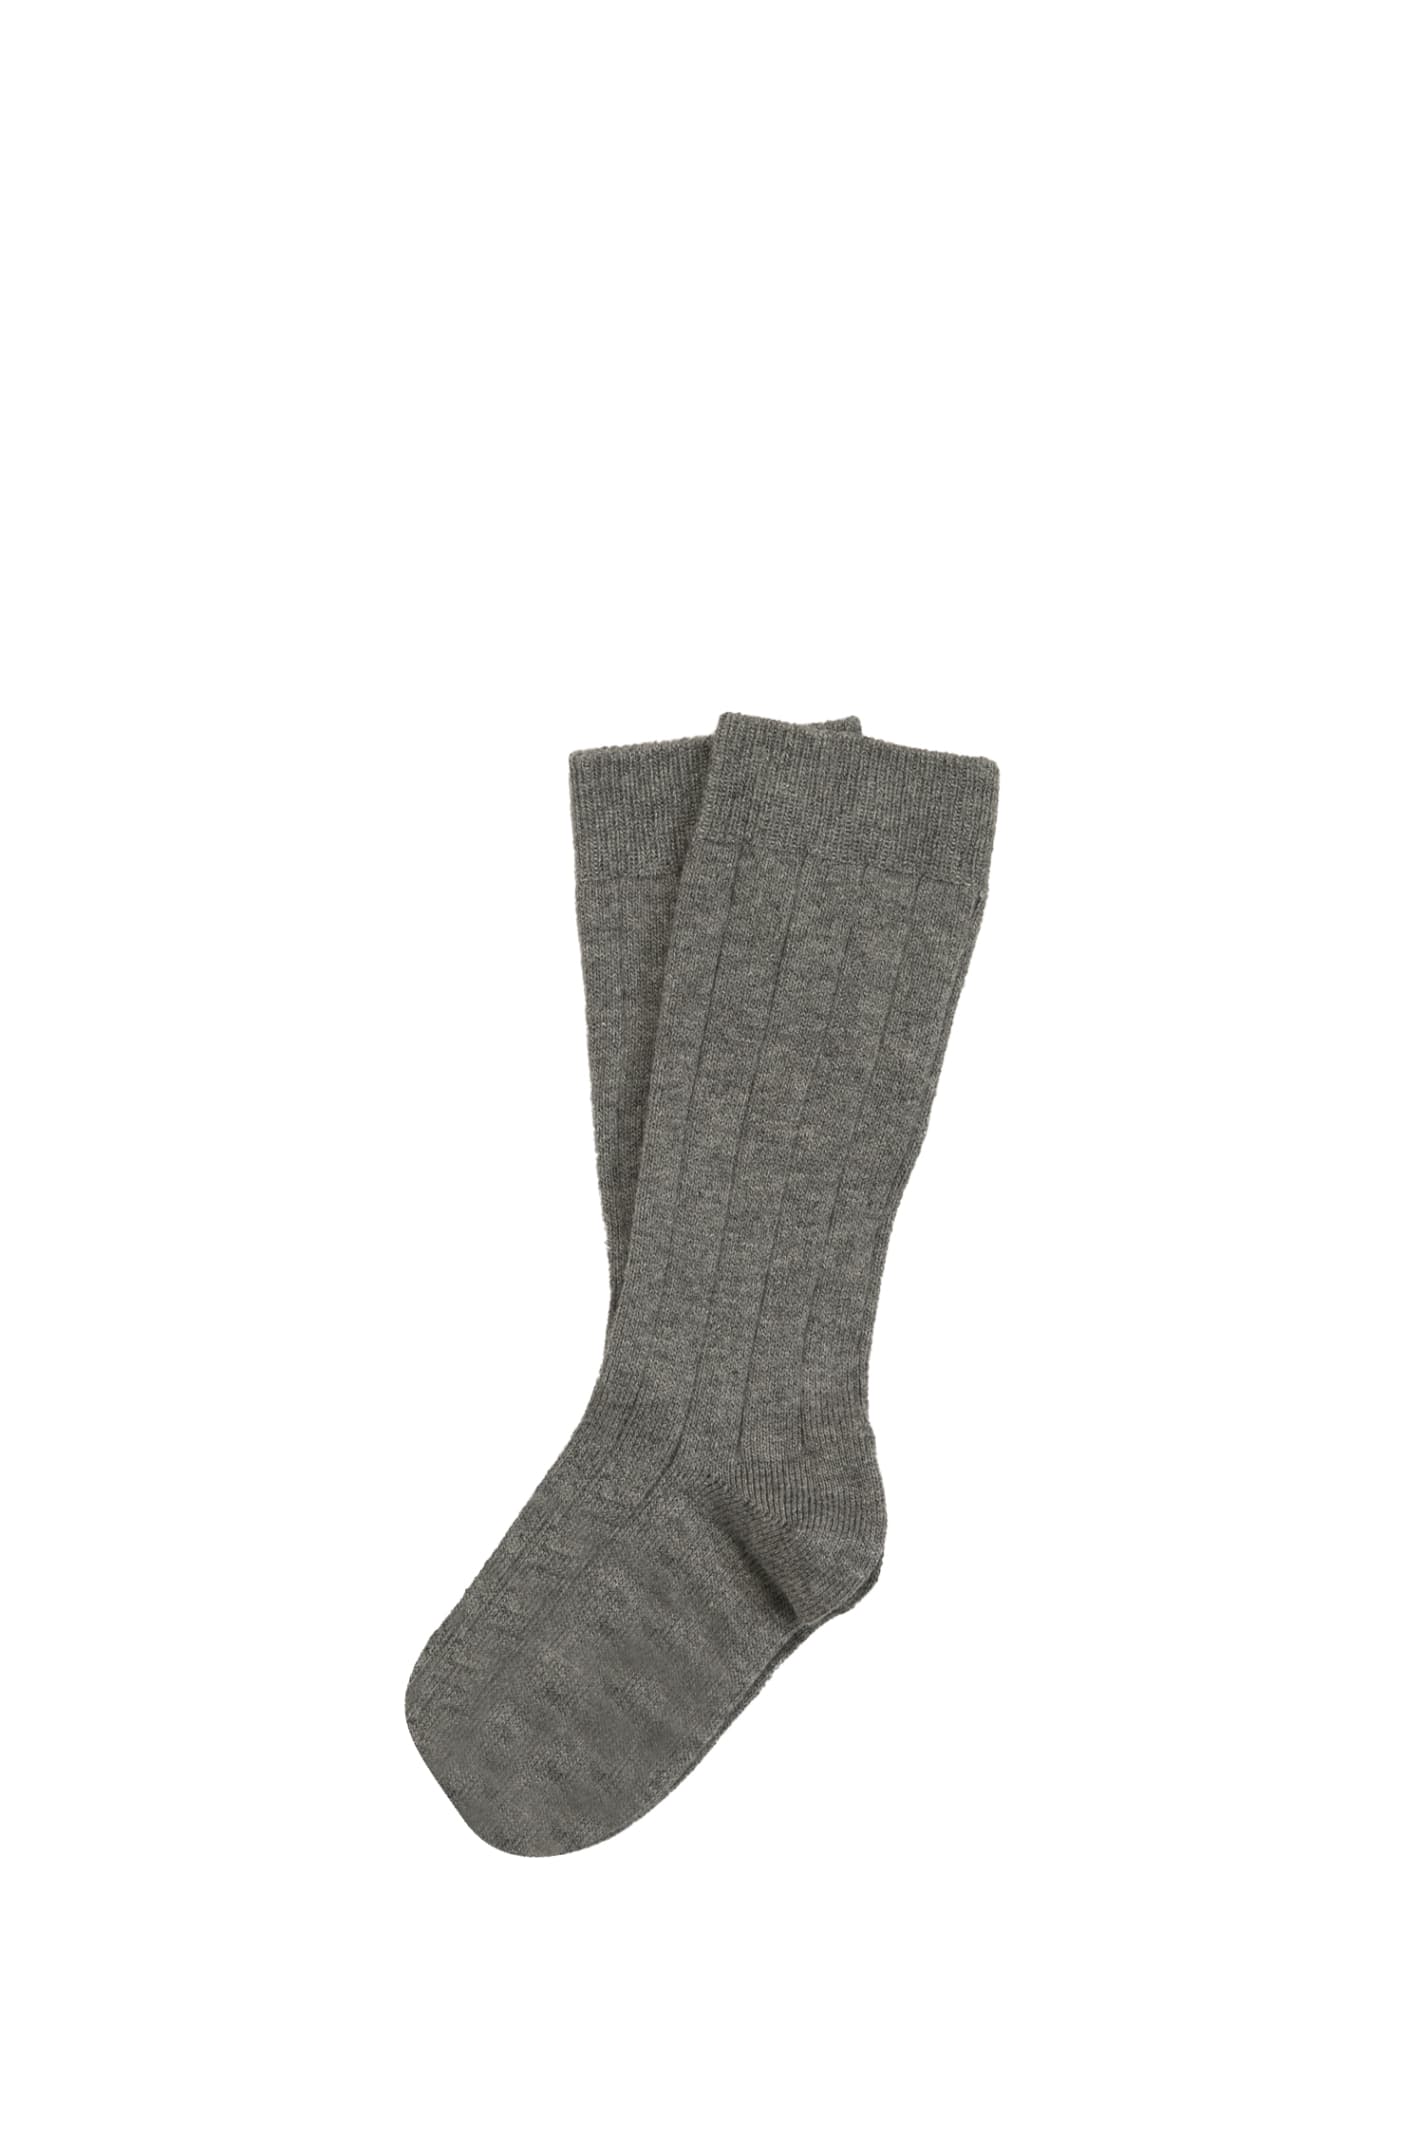 Story Loris Kids' Cotton Socks In Grey